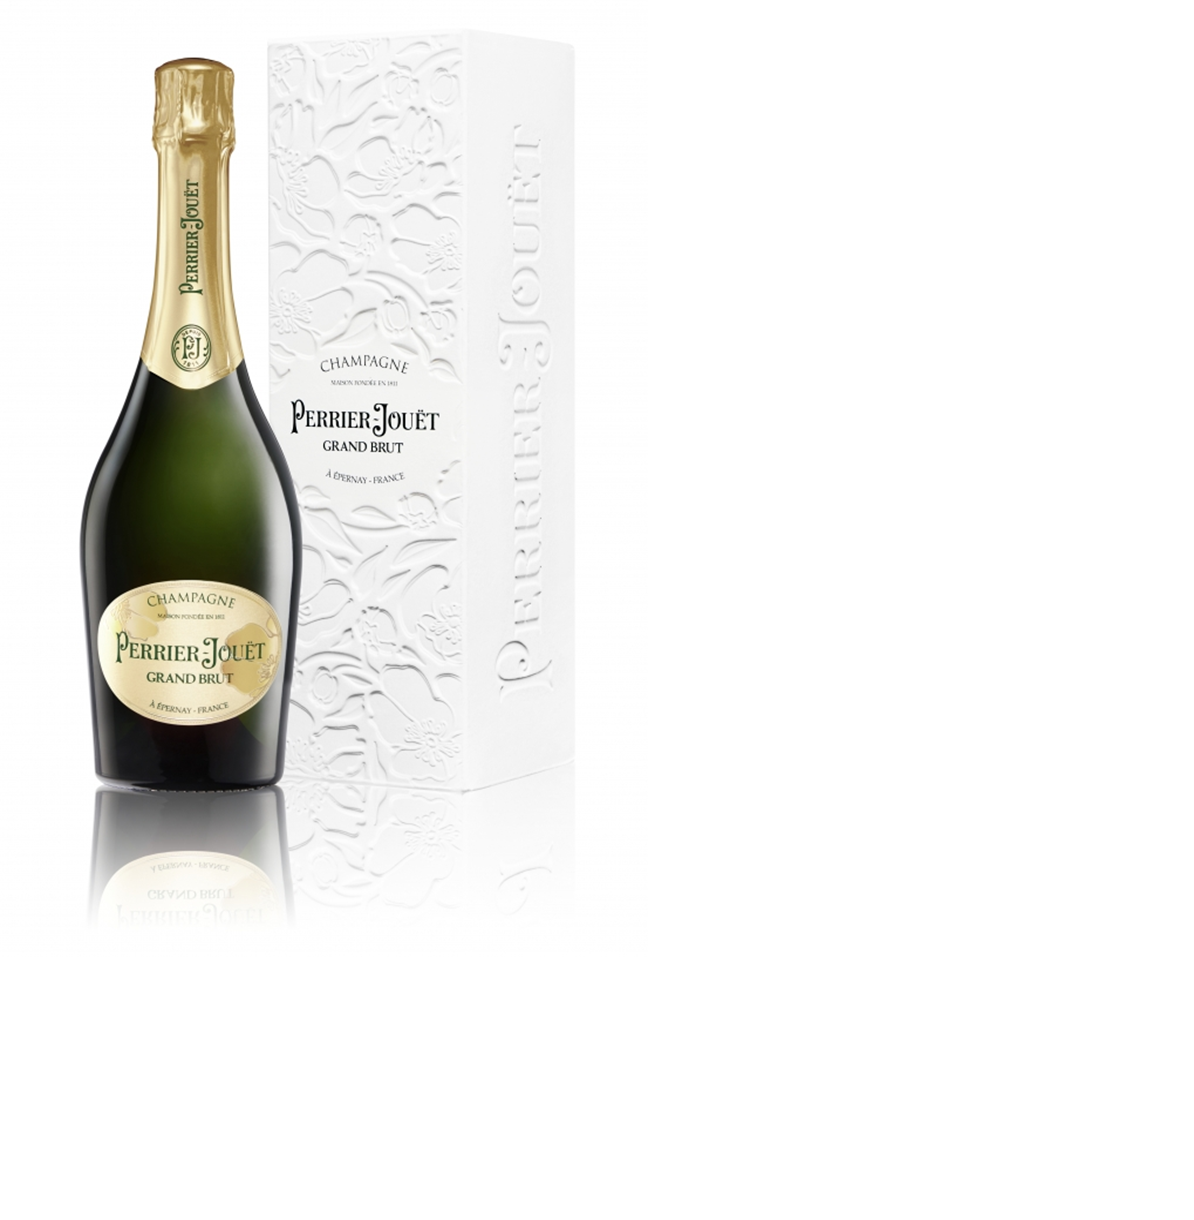 Champagner Perrier Jouet Grand Brut Geschenkpackung